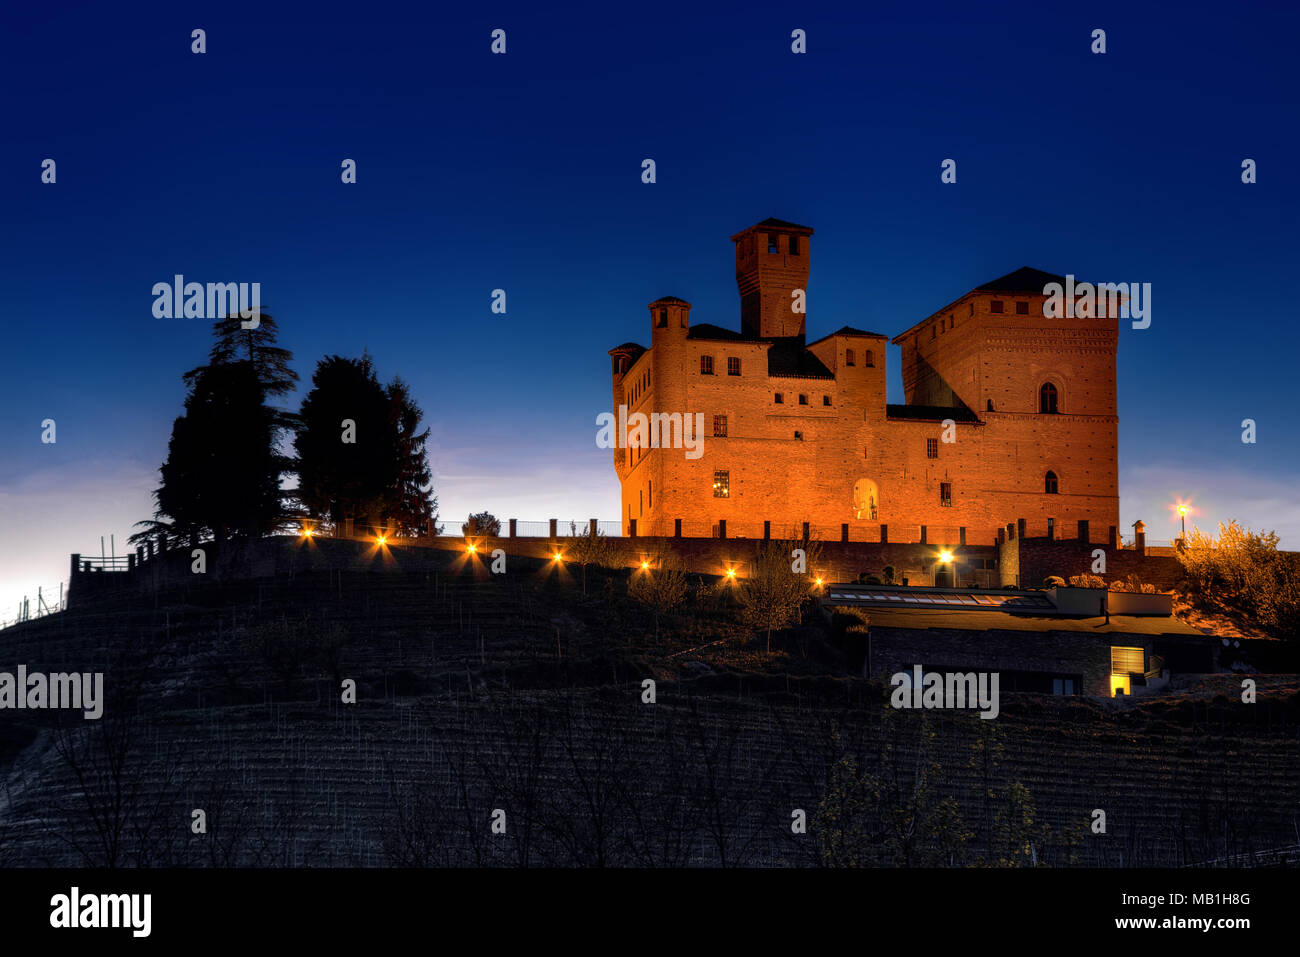 Il Premio Grinzane Cavour Castello (Patrimonio Mondiale dell'Unesco), sede dell'Alba tartufo bianco mondo d'asta, illuminato al calar della sera. Foto Stock